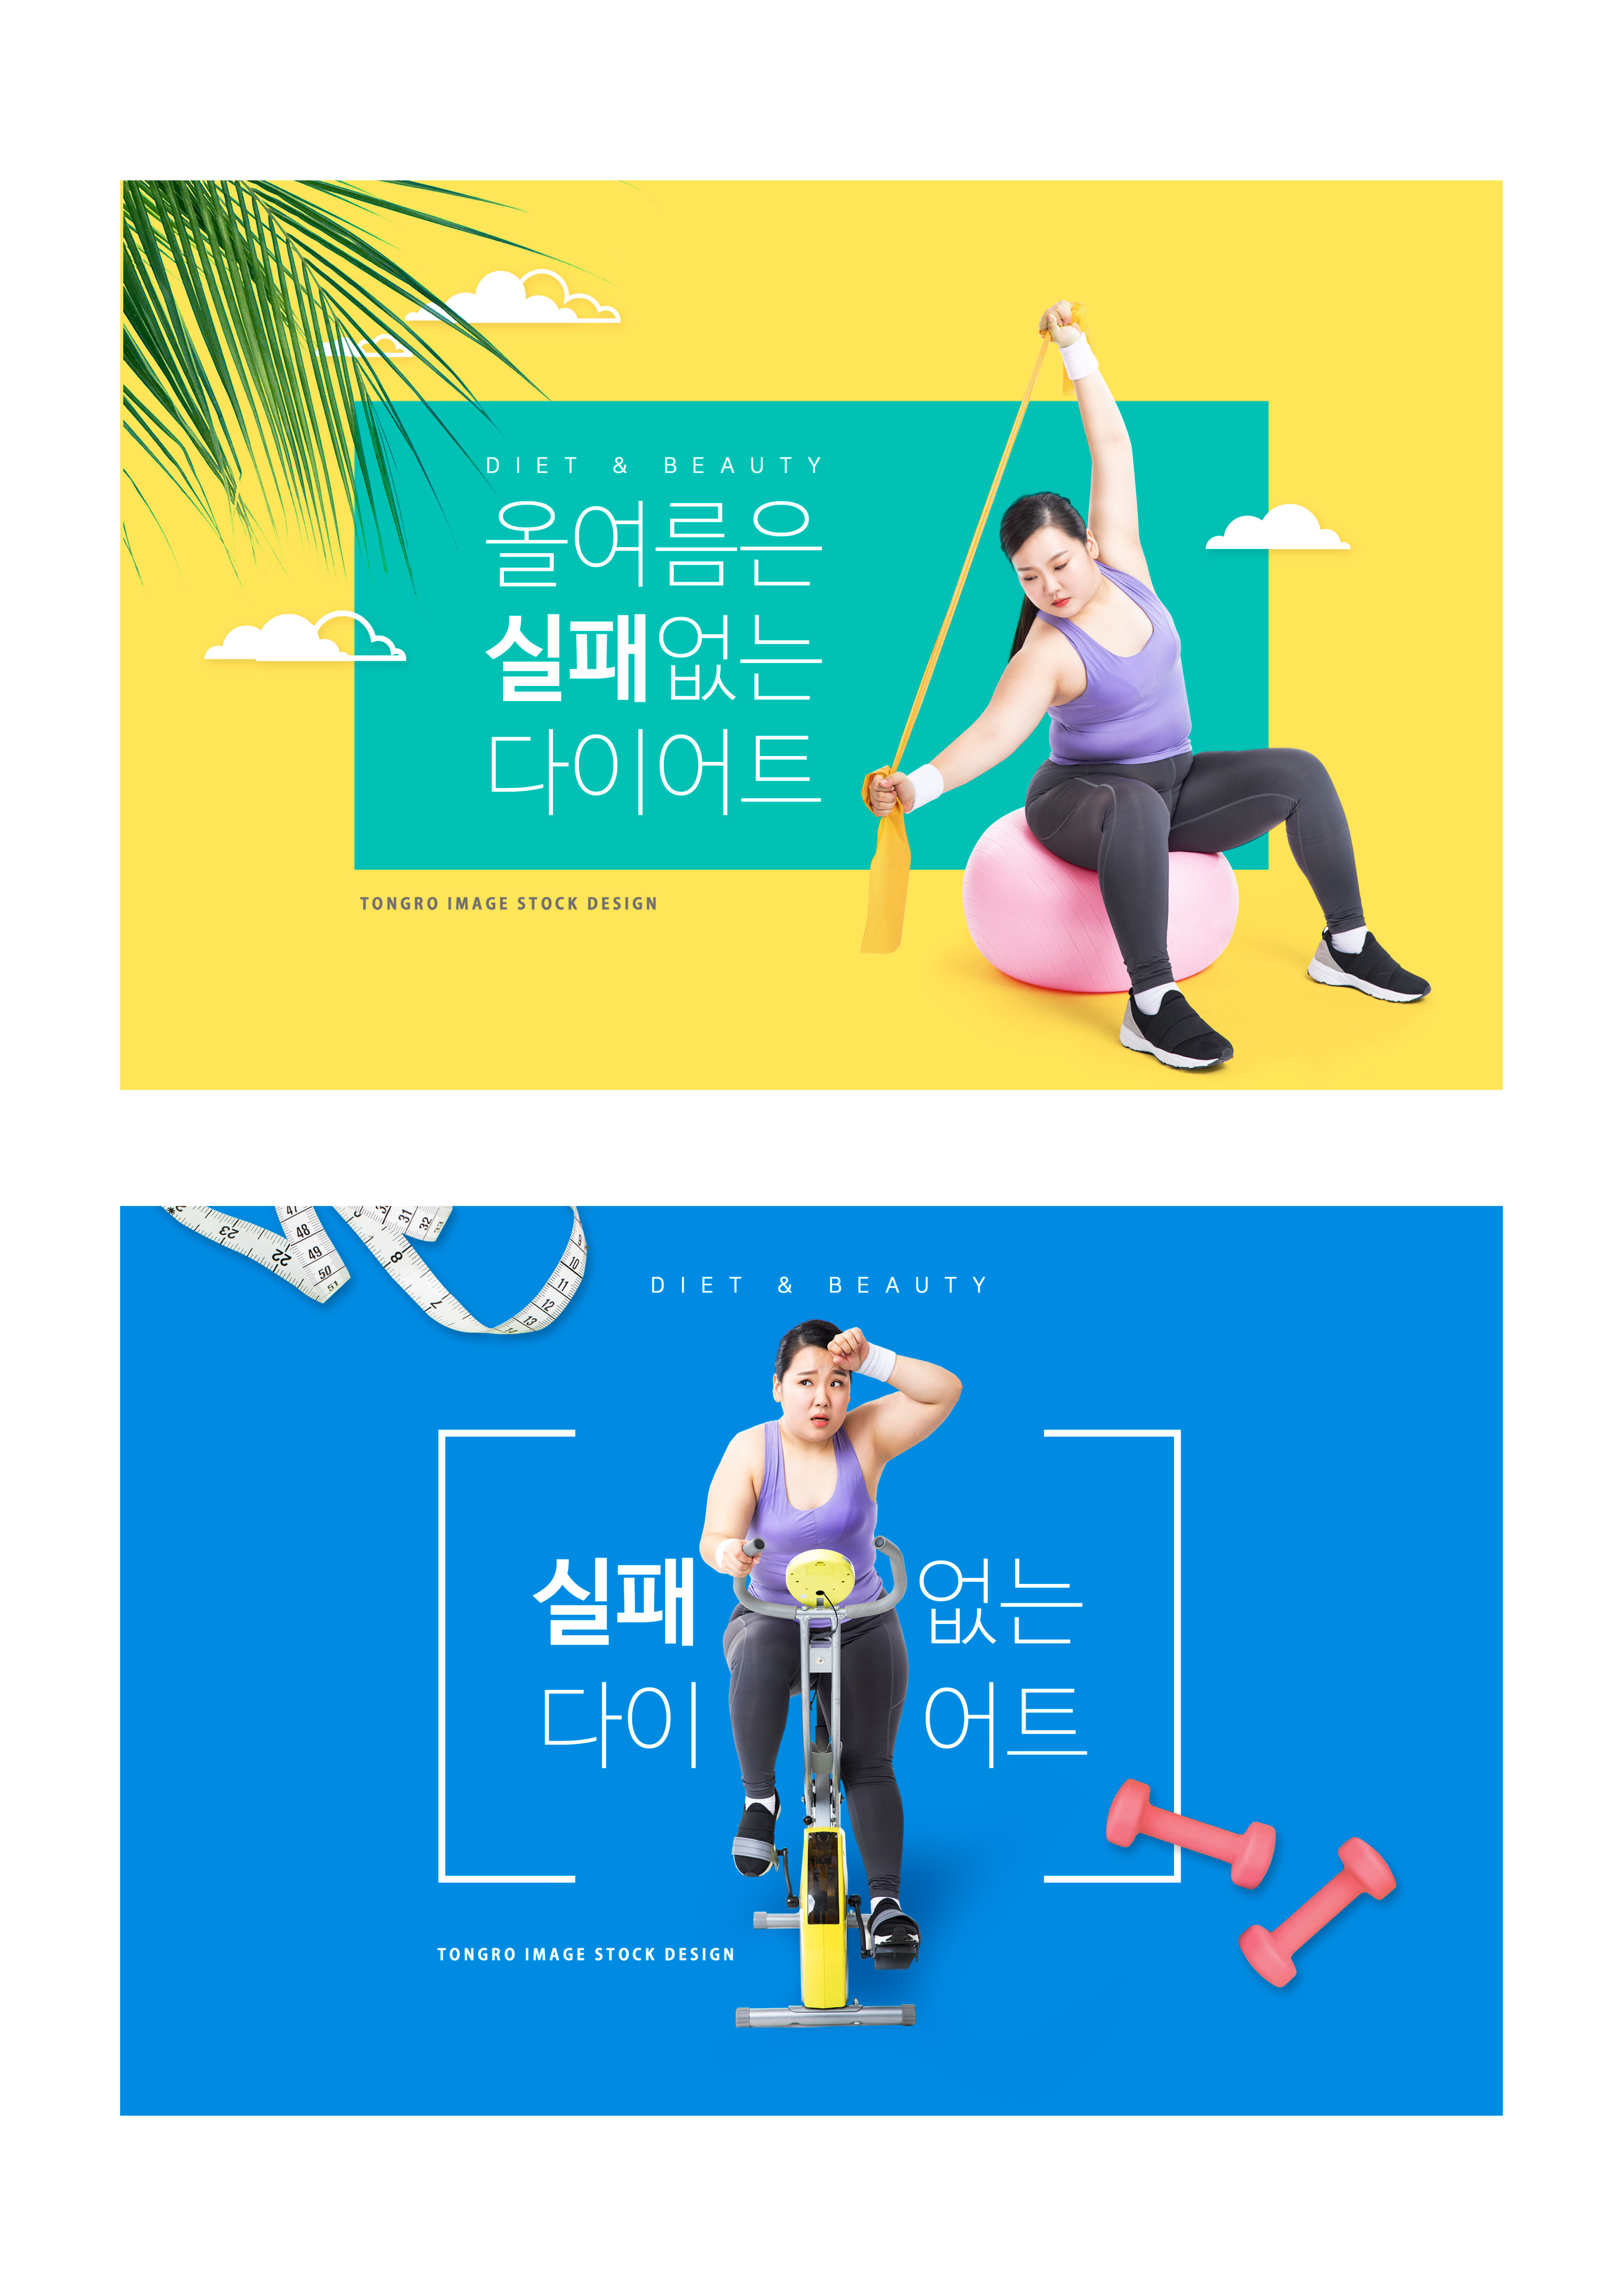 瘦身减肥运动训练营广告Banner/海报设计模板插图